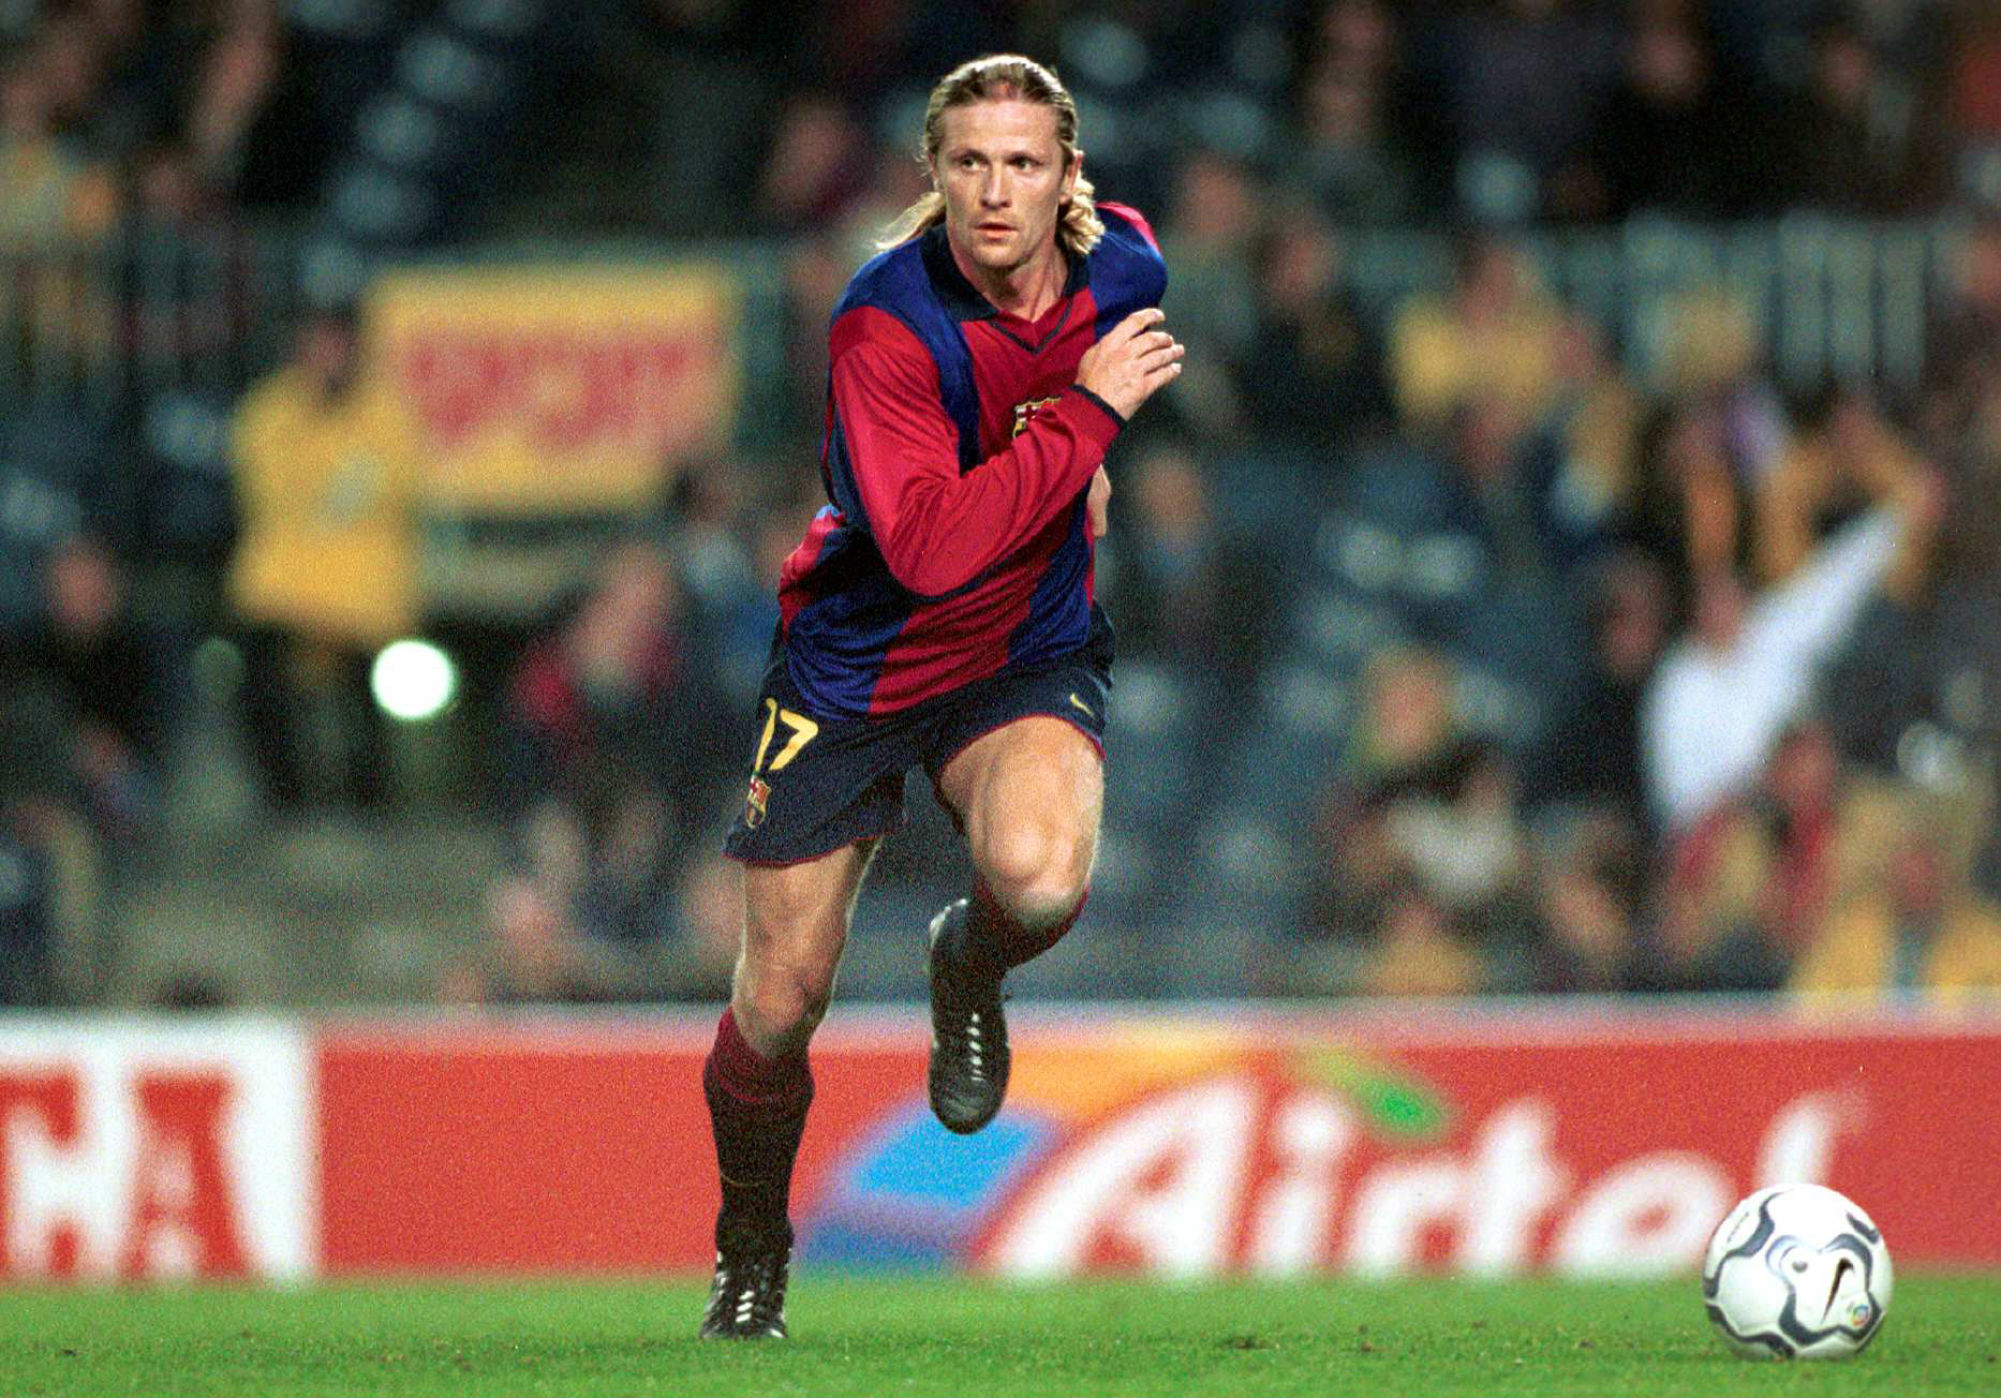 Emmanuel PETIT - 08.12.2000 - Barcelone / Brugge - Coupe de l'UEFA
Photo